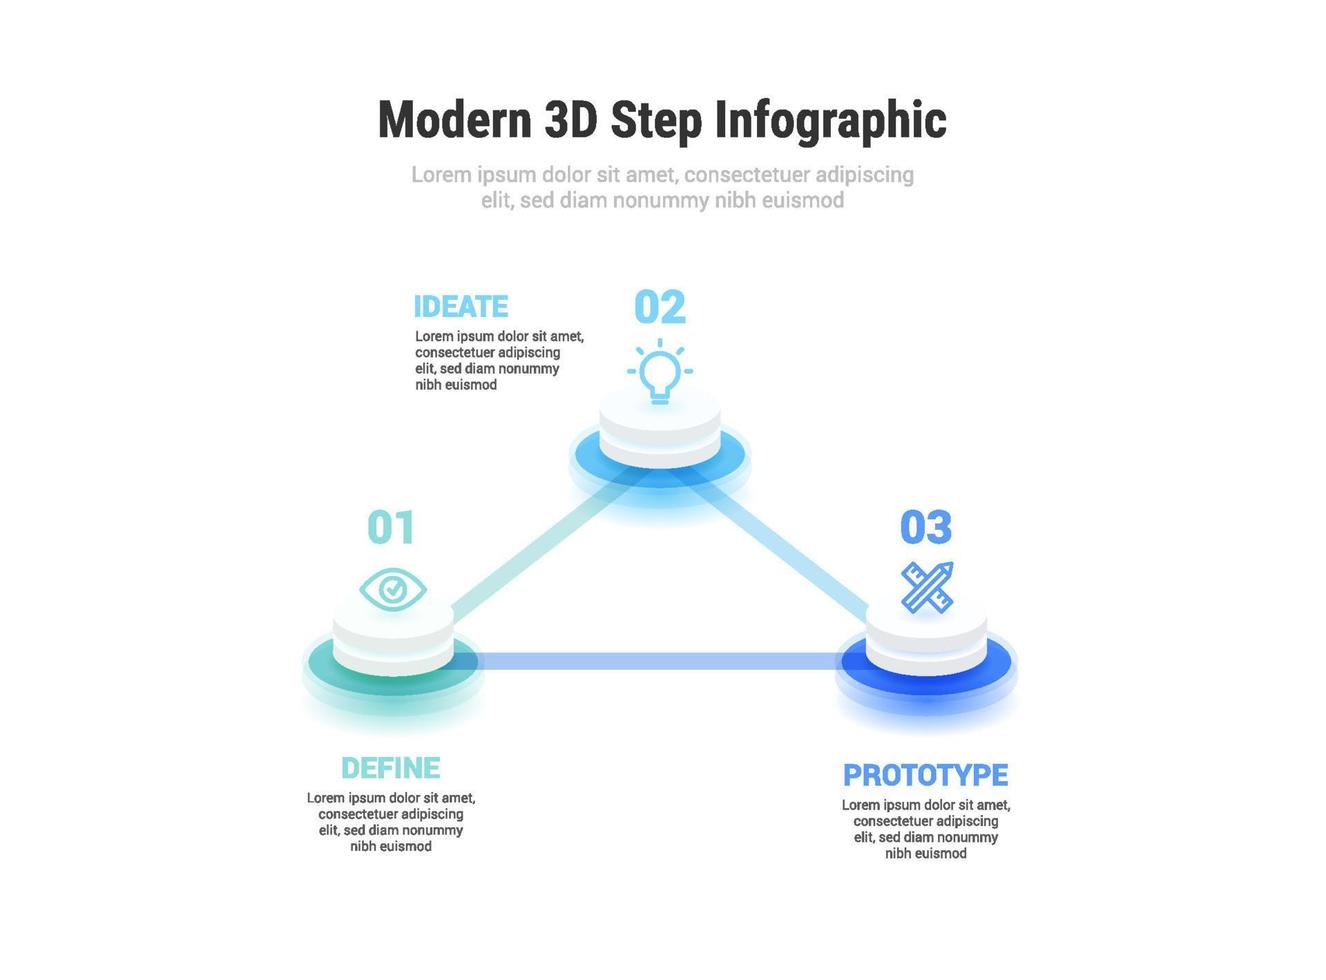 modern 3d 3 steg infographic vektor